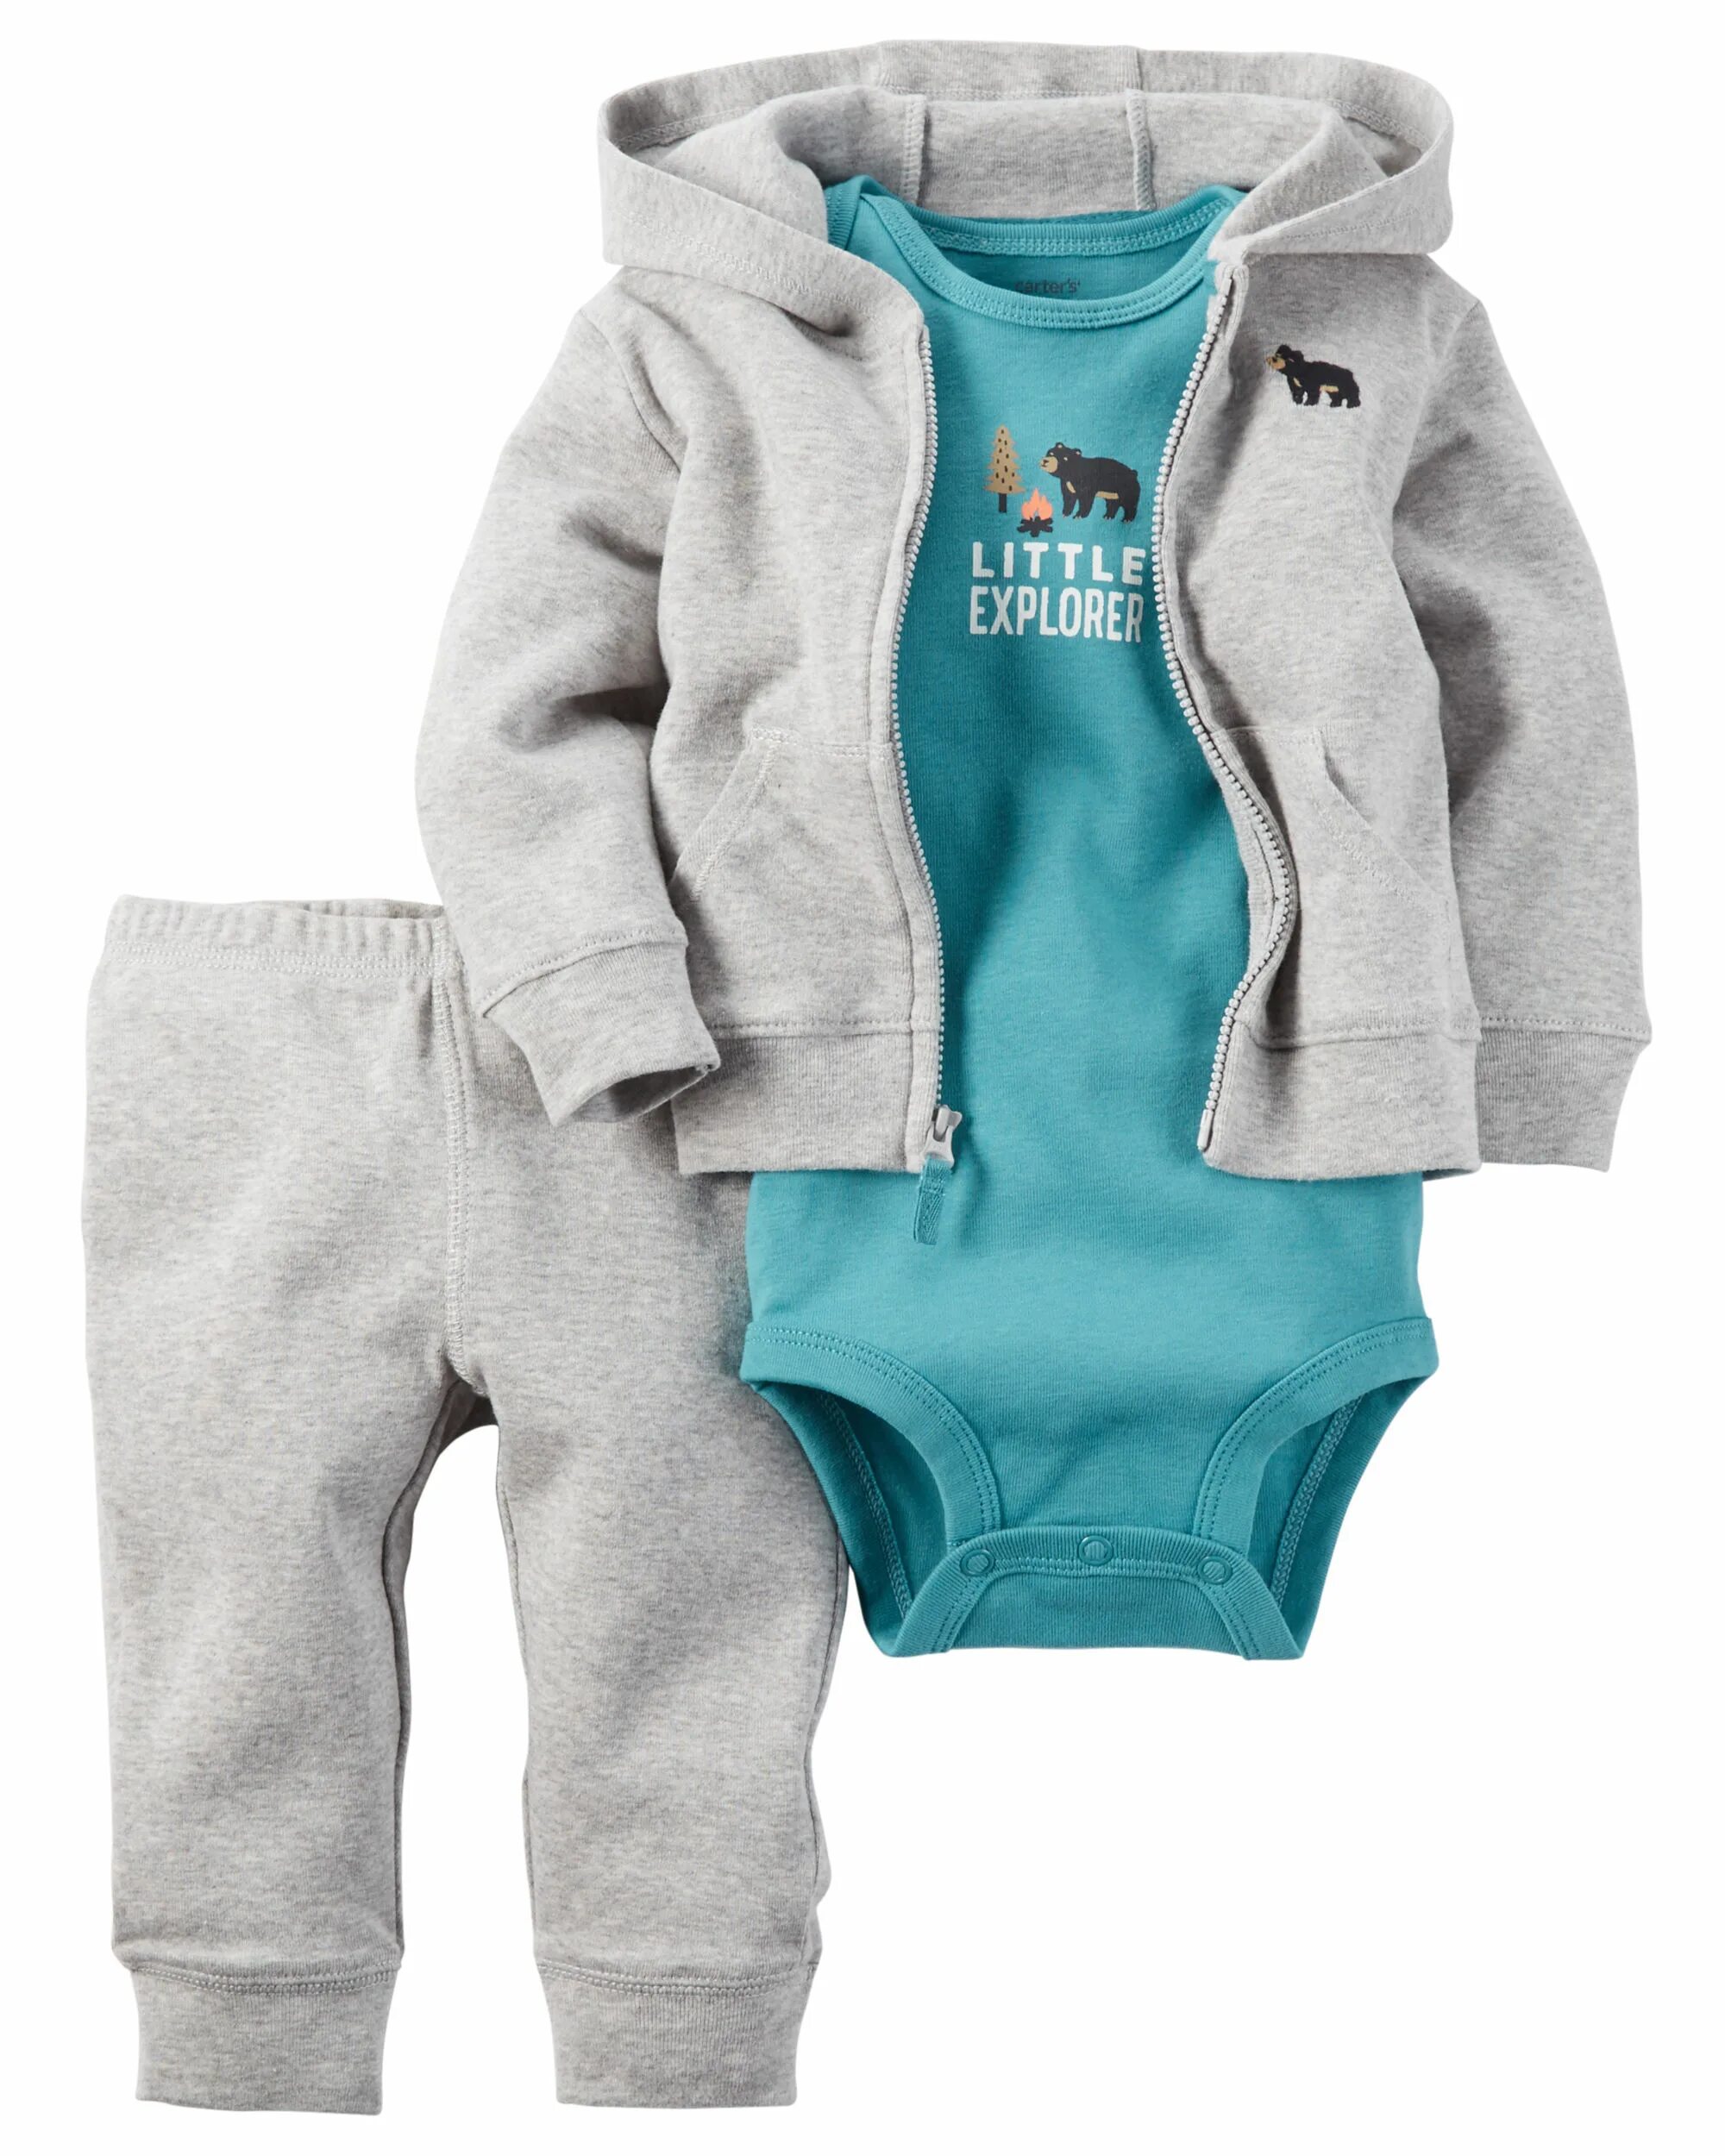 Костюм Carters 1h359510. Костюм тройка Картерс. Одежда для новорожденных мальчиков Картерс. Комплект Картерс для новорожденных мальчиков.